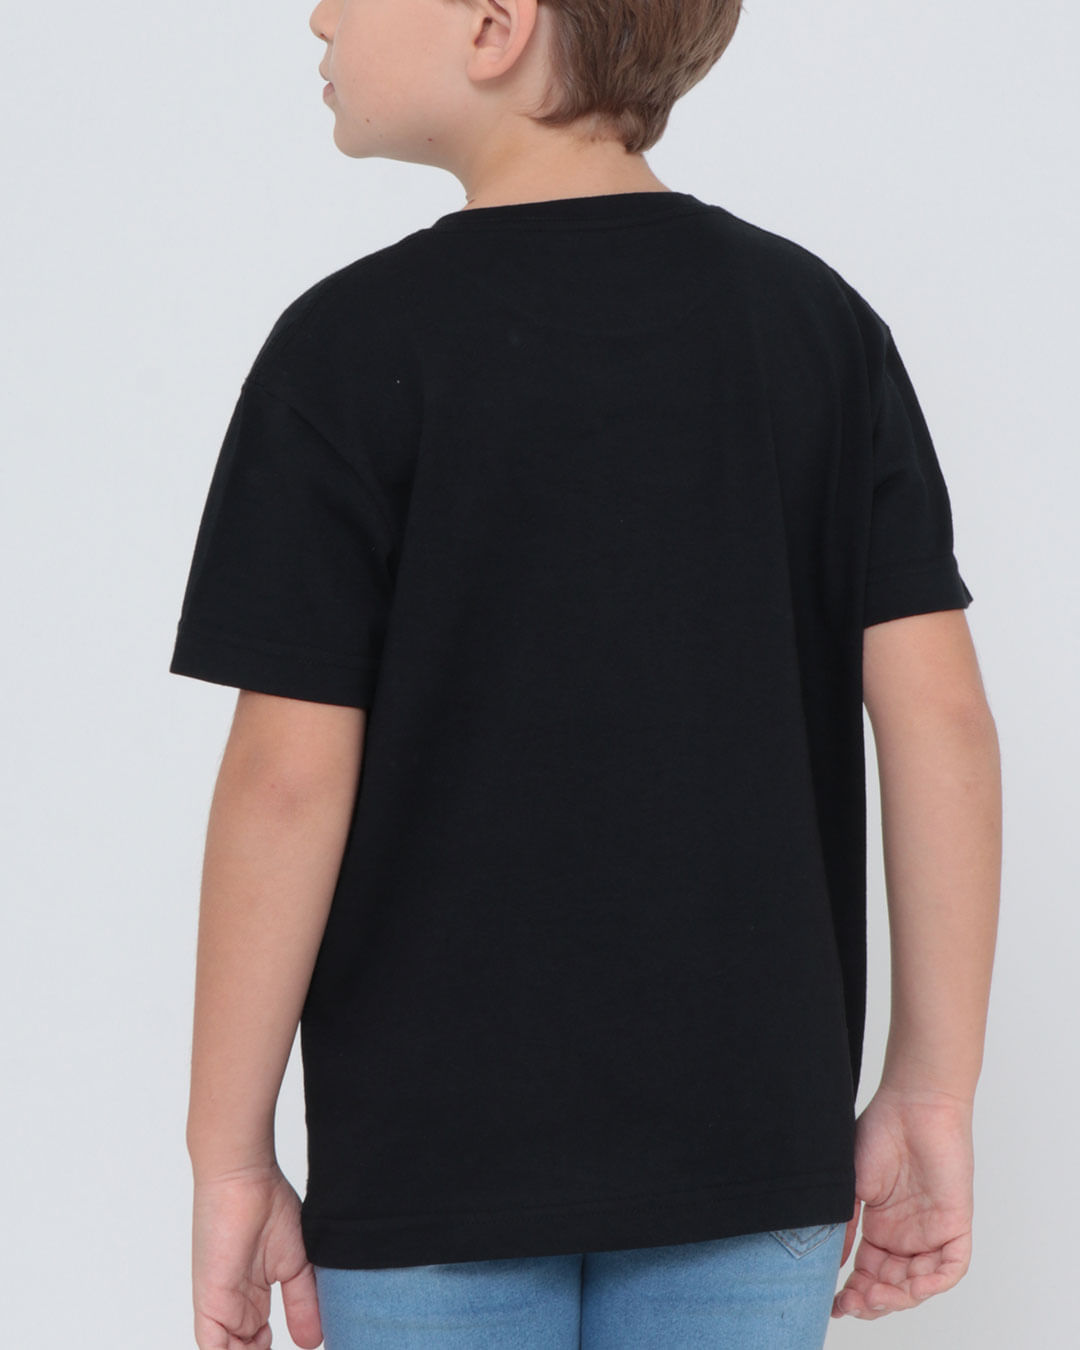 Camiseta-Infantil-Estampa-Copy-Manga-Curta-Preta